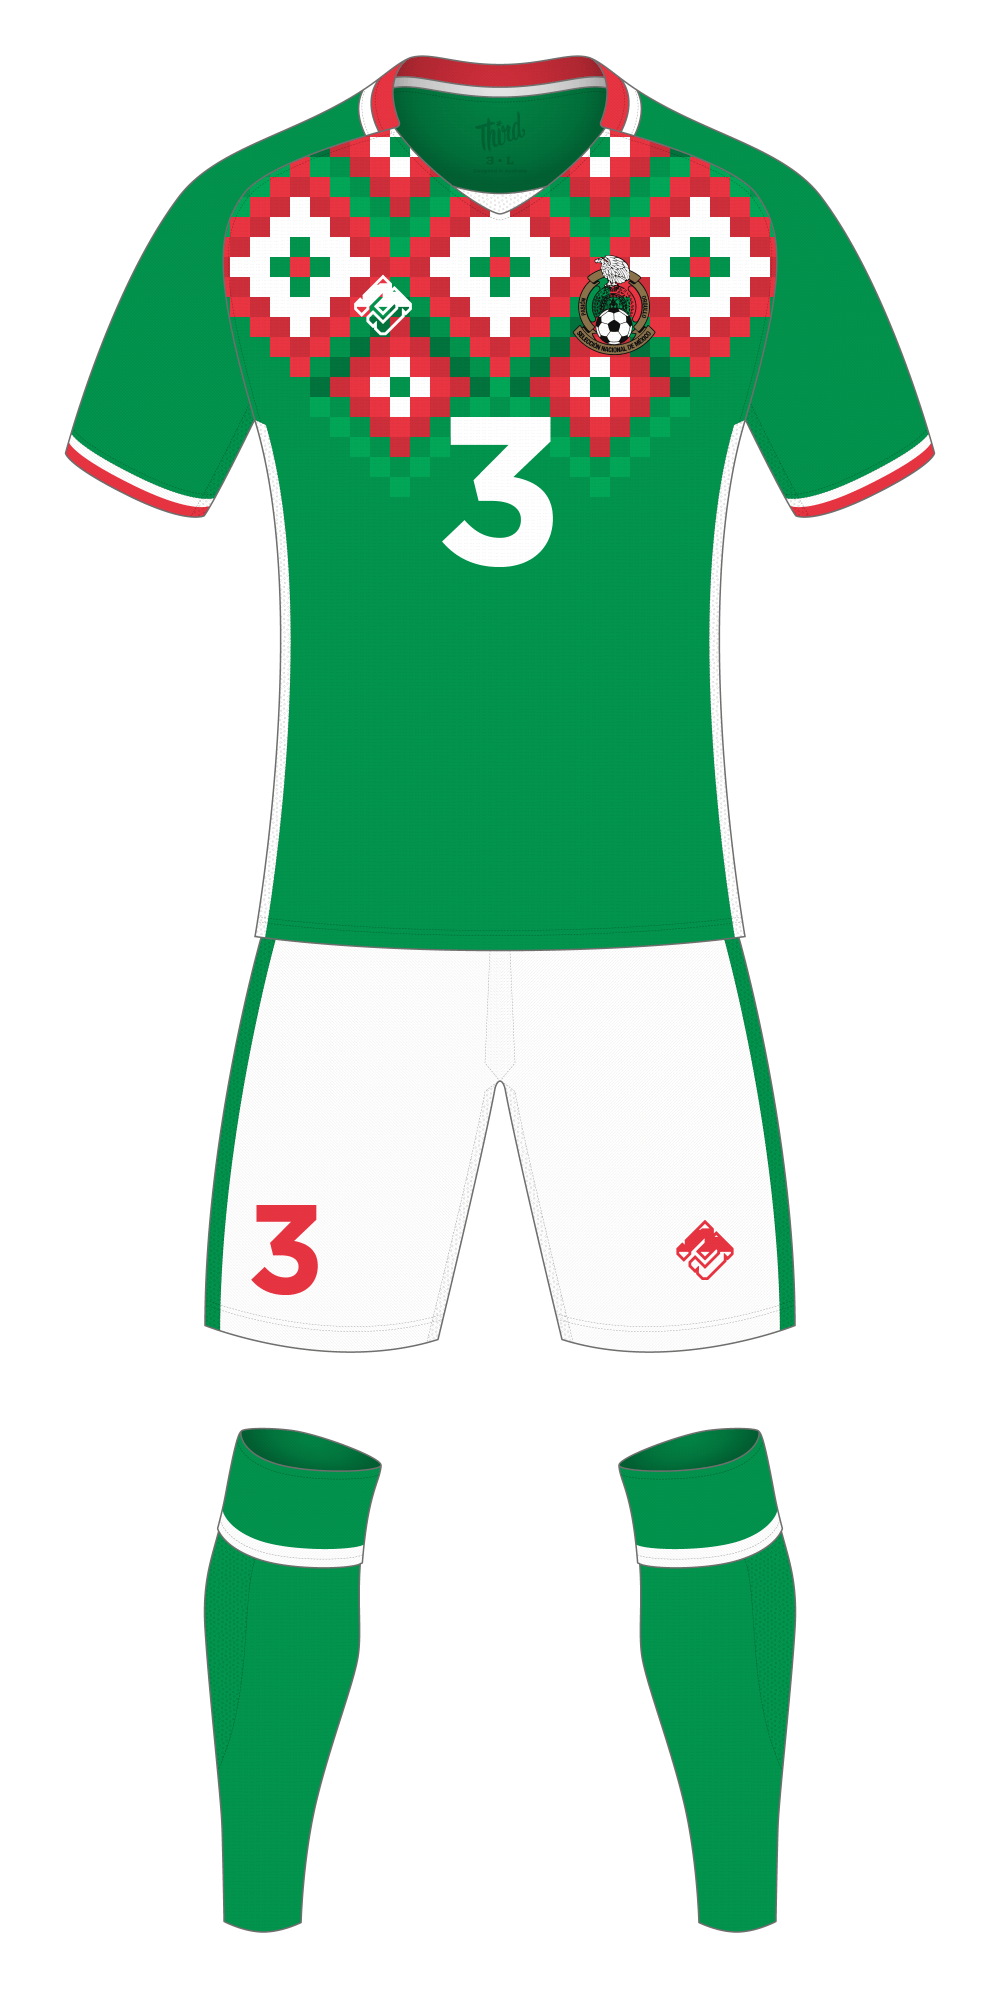 Mexico World Cup 2018 concept